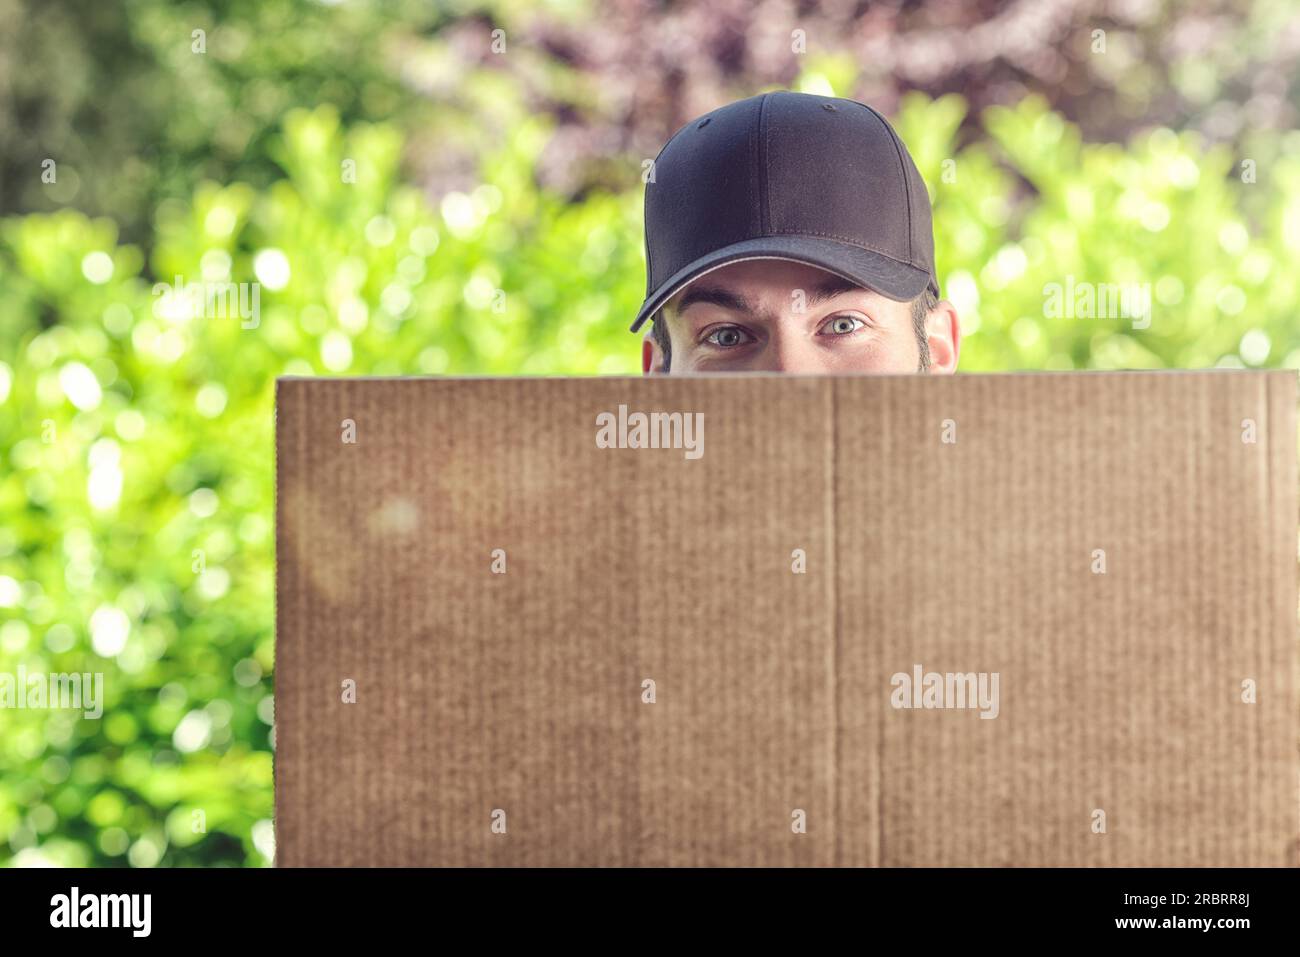 Ein Mann liefert einen großen Karton, der die untere Hälfte seines Gesichts bedeckt, sodass nur seine Augen und die Kappe vor einem frischen Hintergrund zu sehen sind Stockfoto